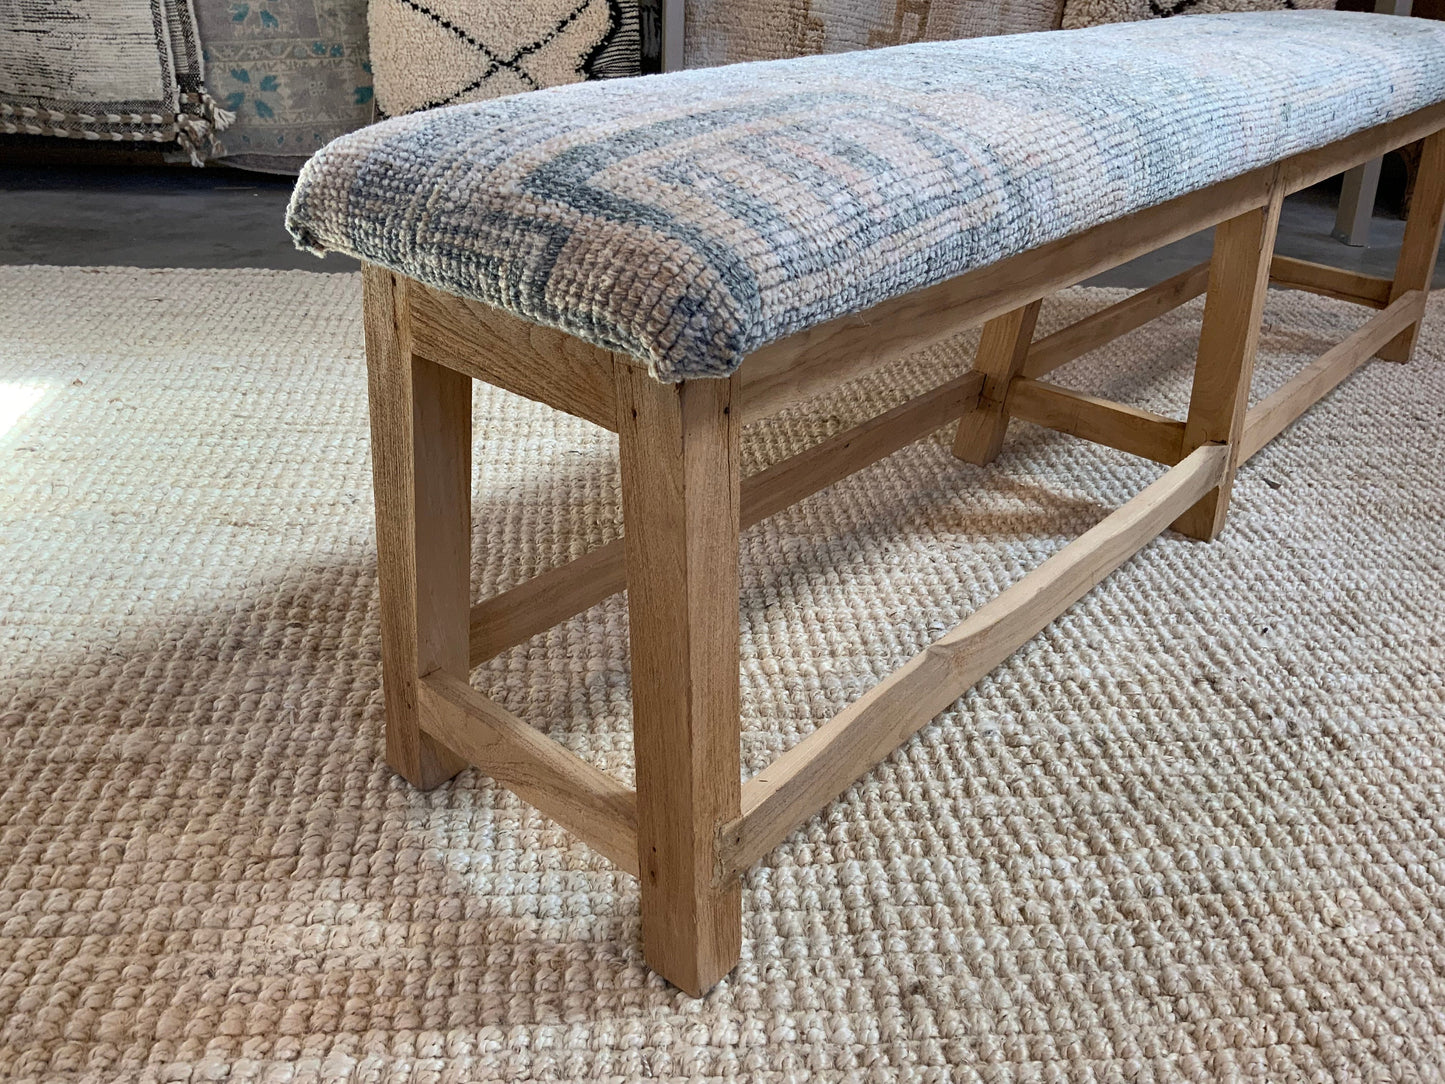 LG - Vintage Rug Upholstered Bleached Wood Bench - A